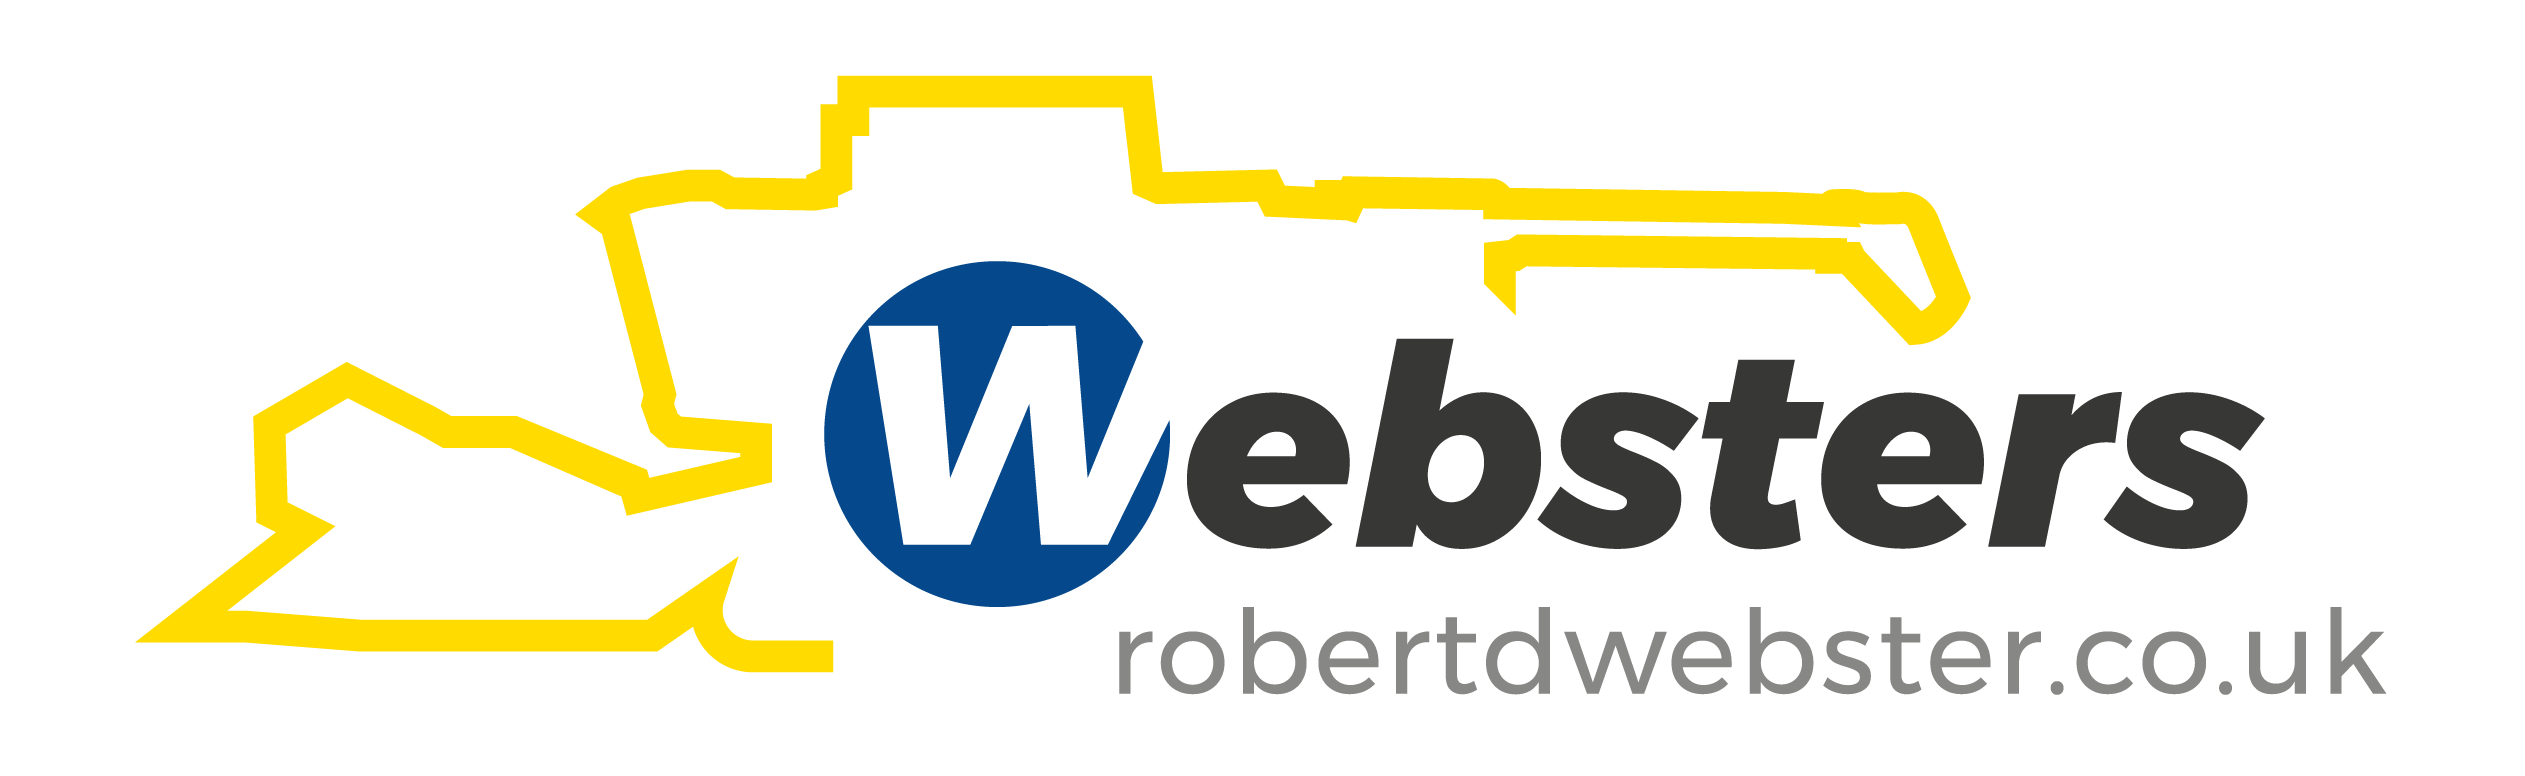 ROBERT D WEBSTER LTD